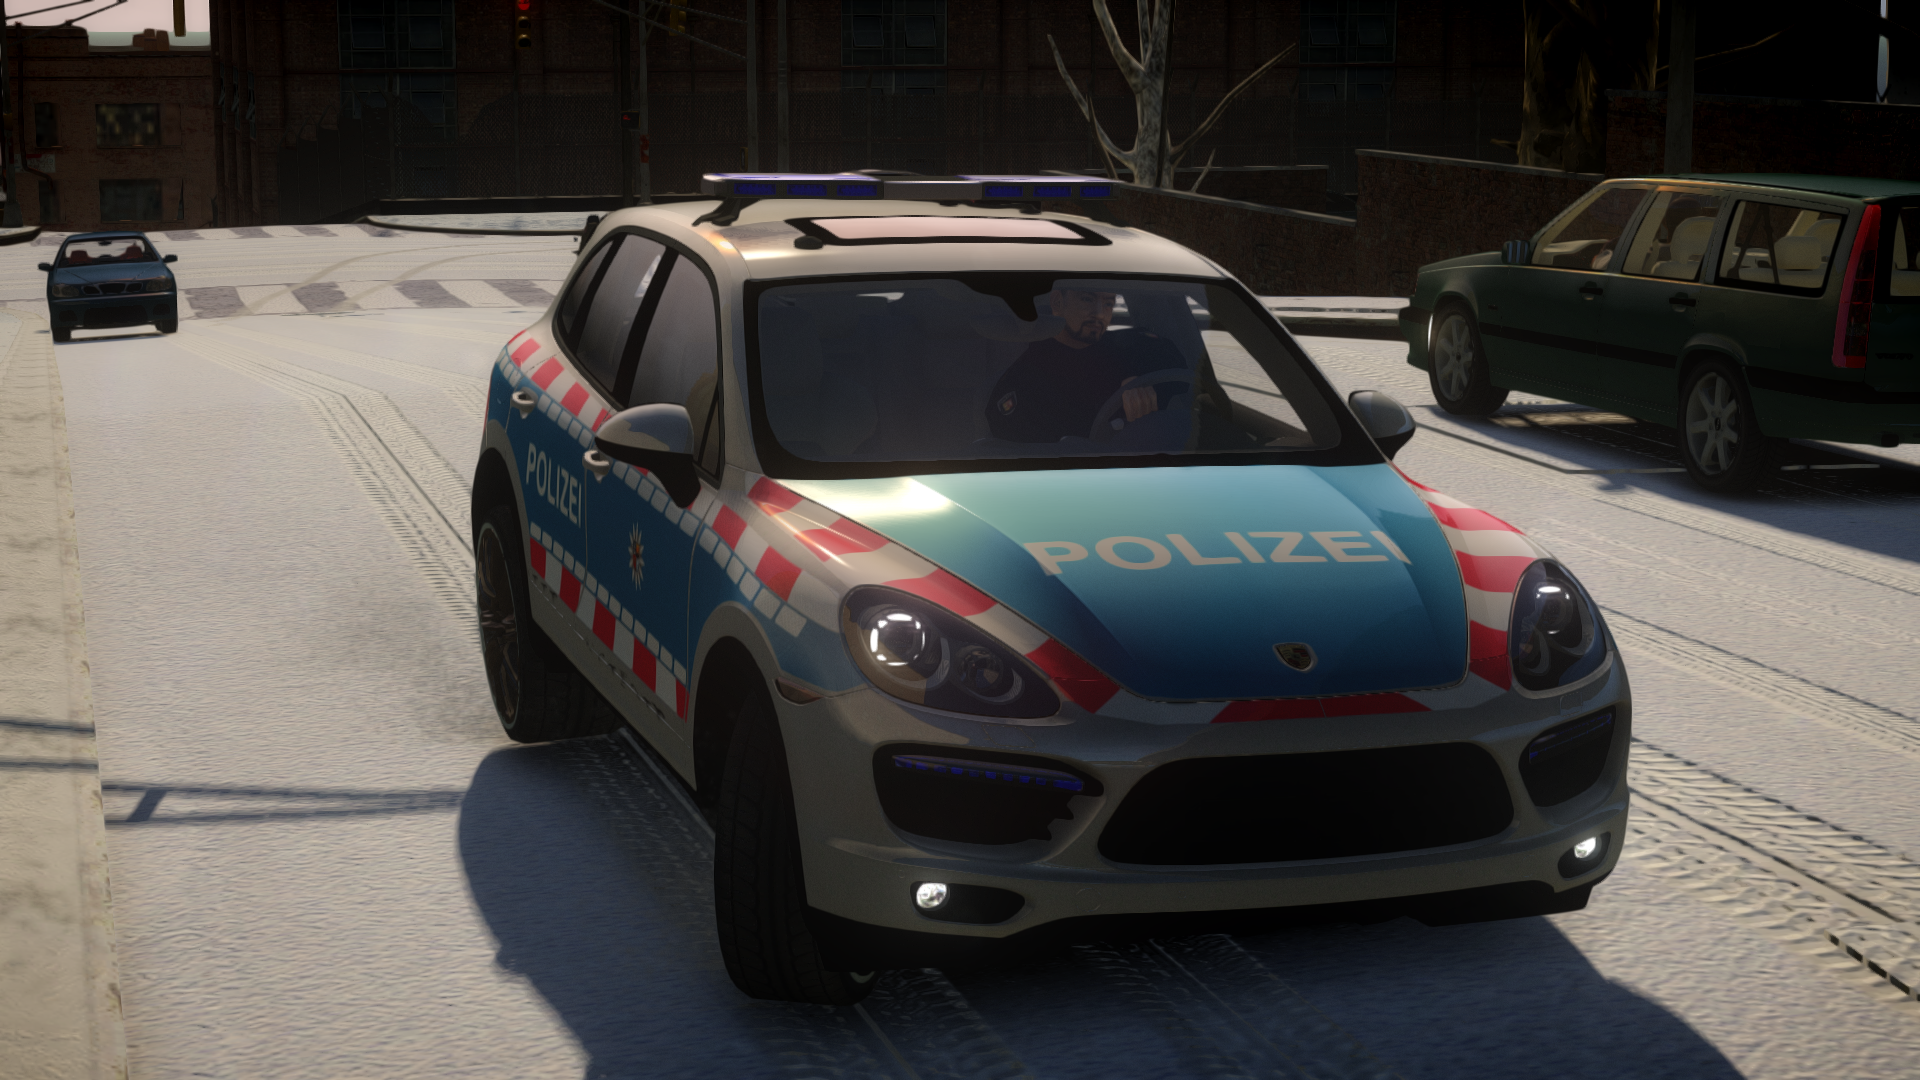 GTA IV, German Livery Pack, DEUTSCHES Polizei Pack